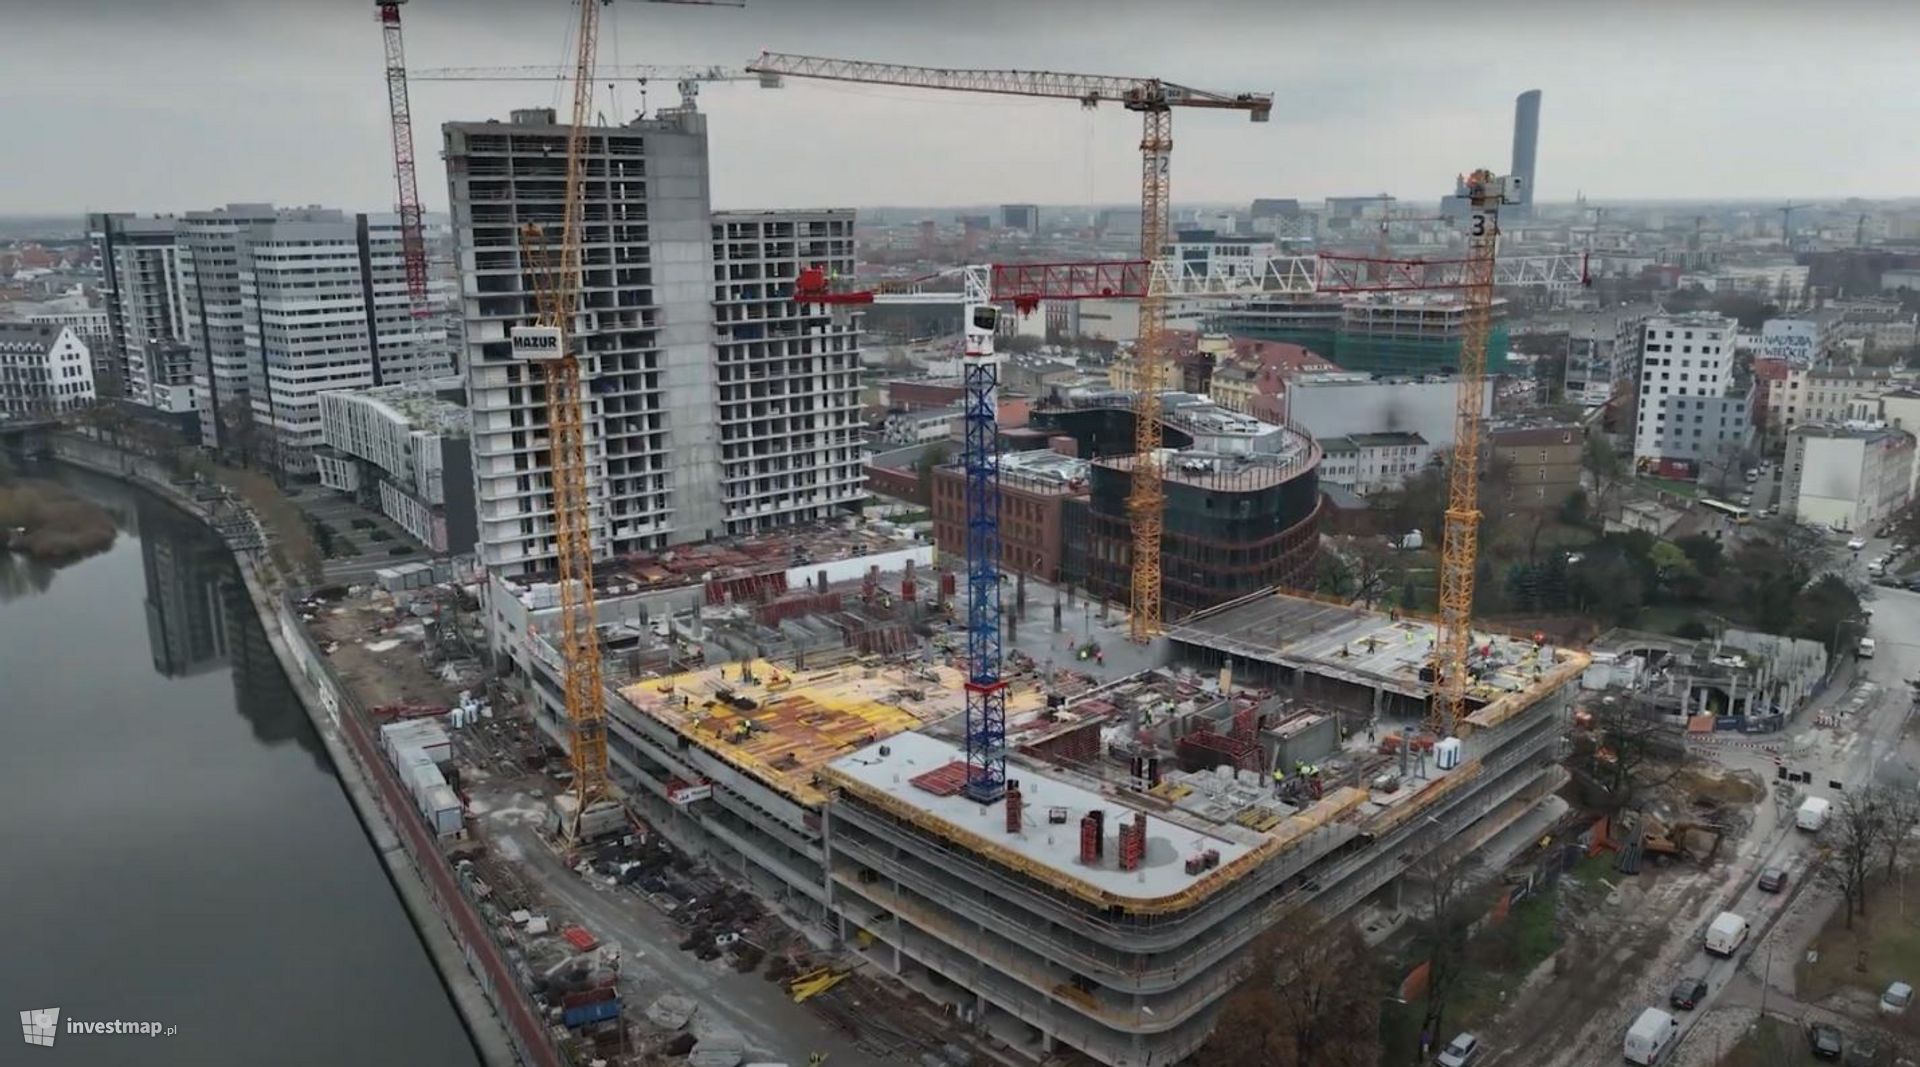 W centrum Wrocławia powstaje nowy kompleks wielofunkcyjny Quorum ze 140-metrowym wieżowcem 